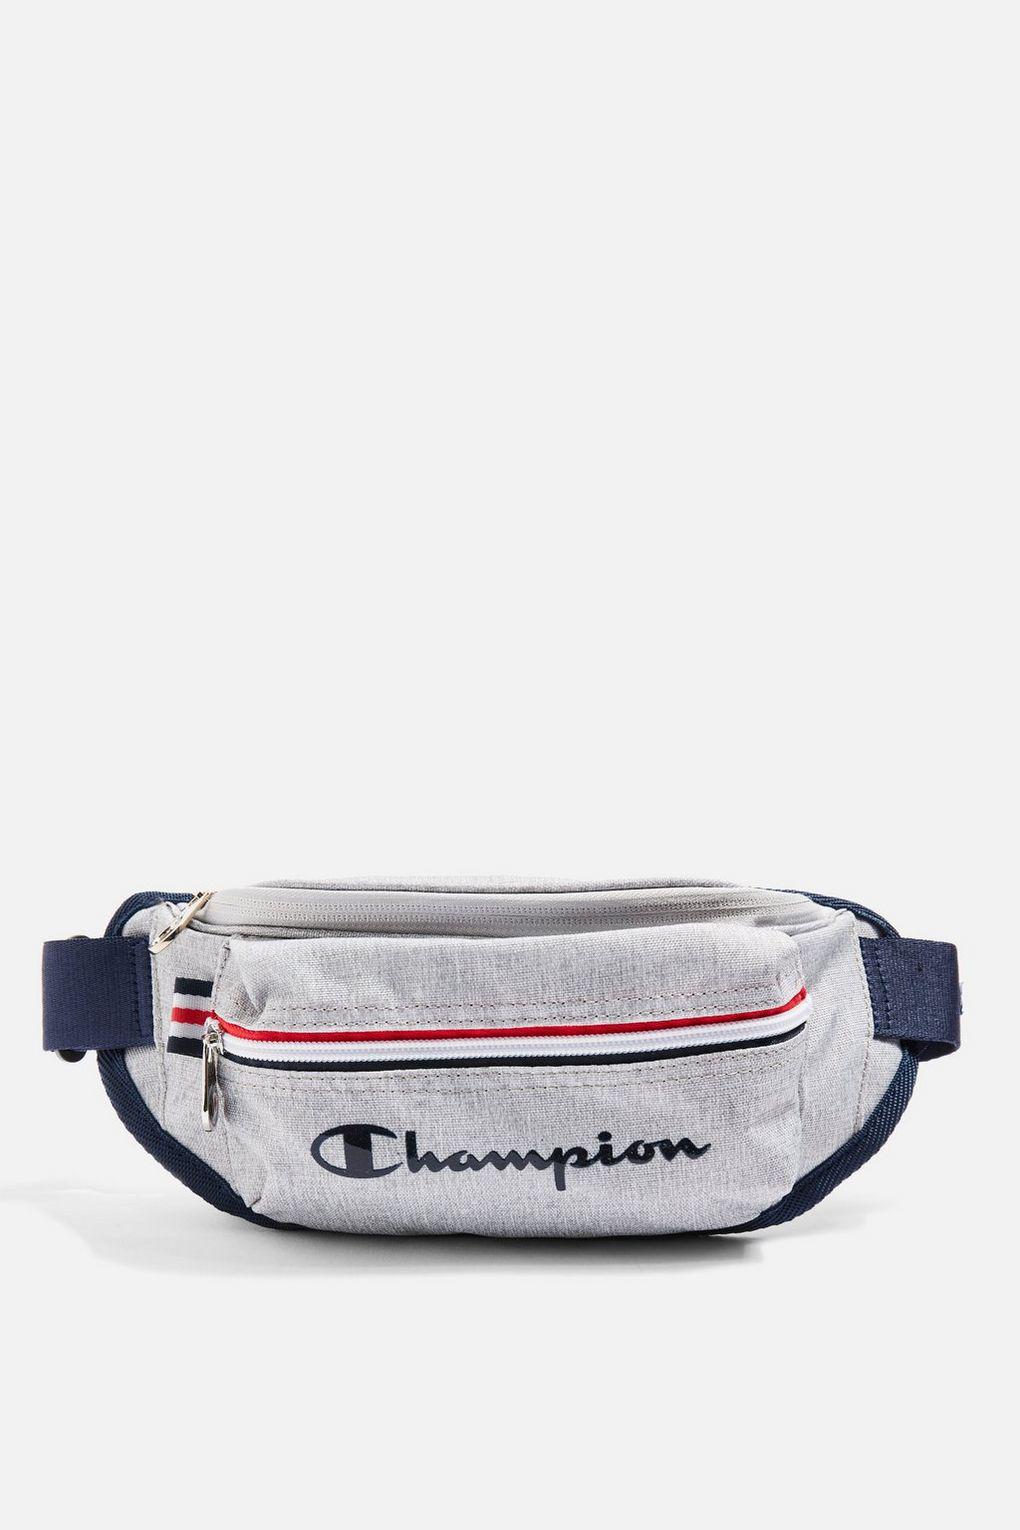 champion bum bag grey off 61% - www 